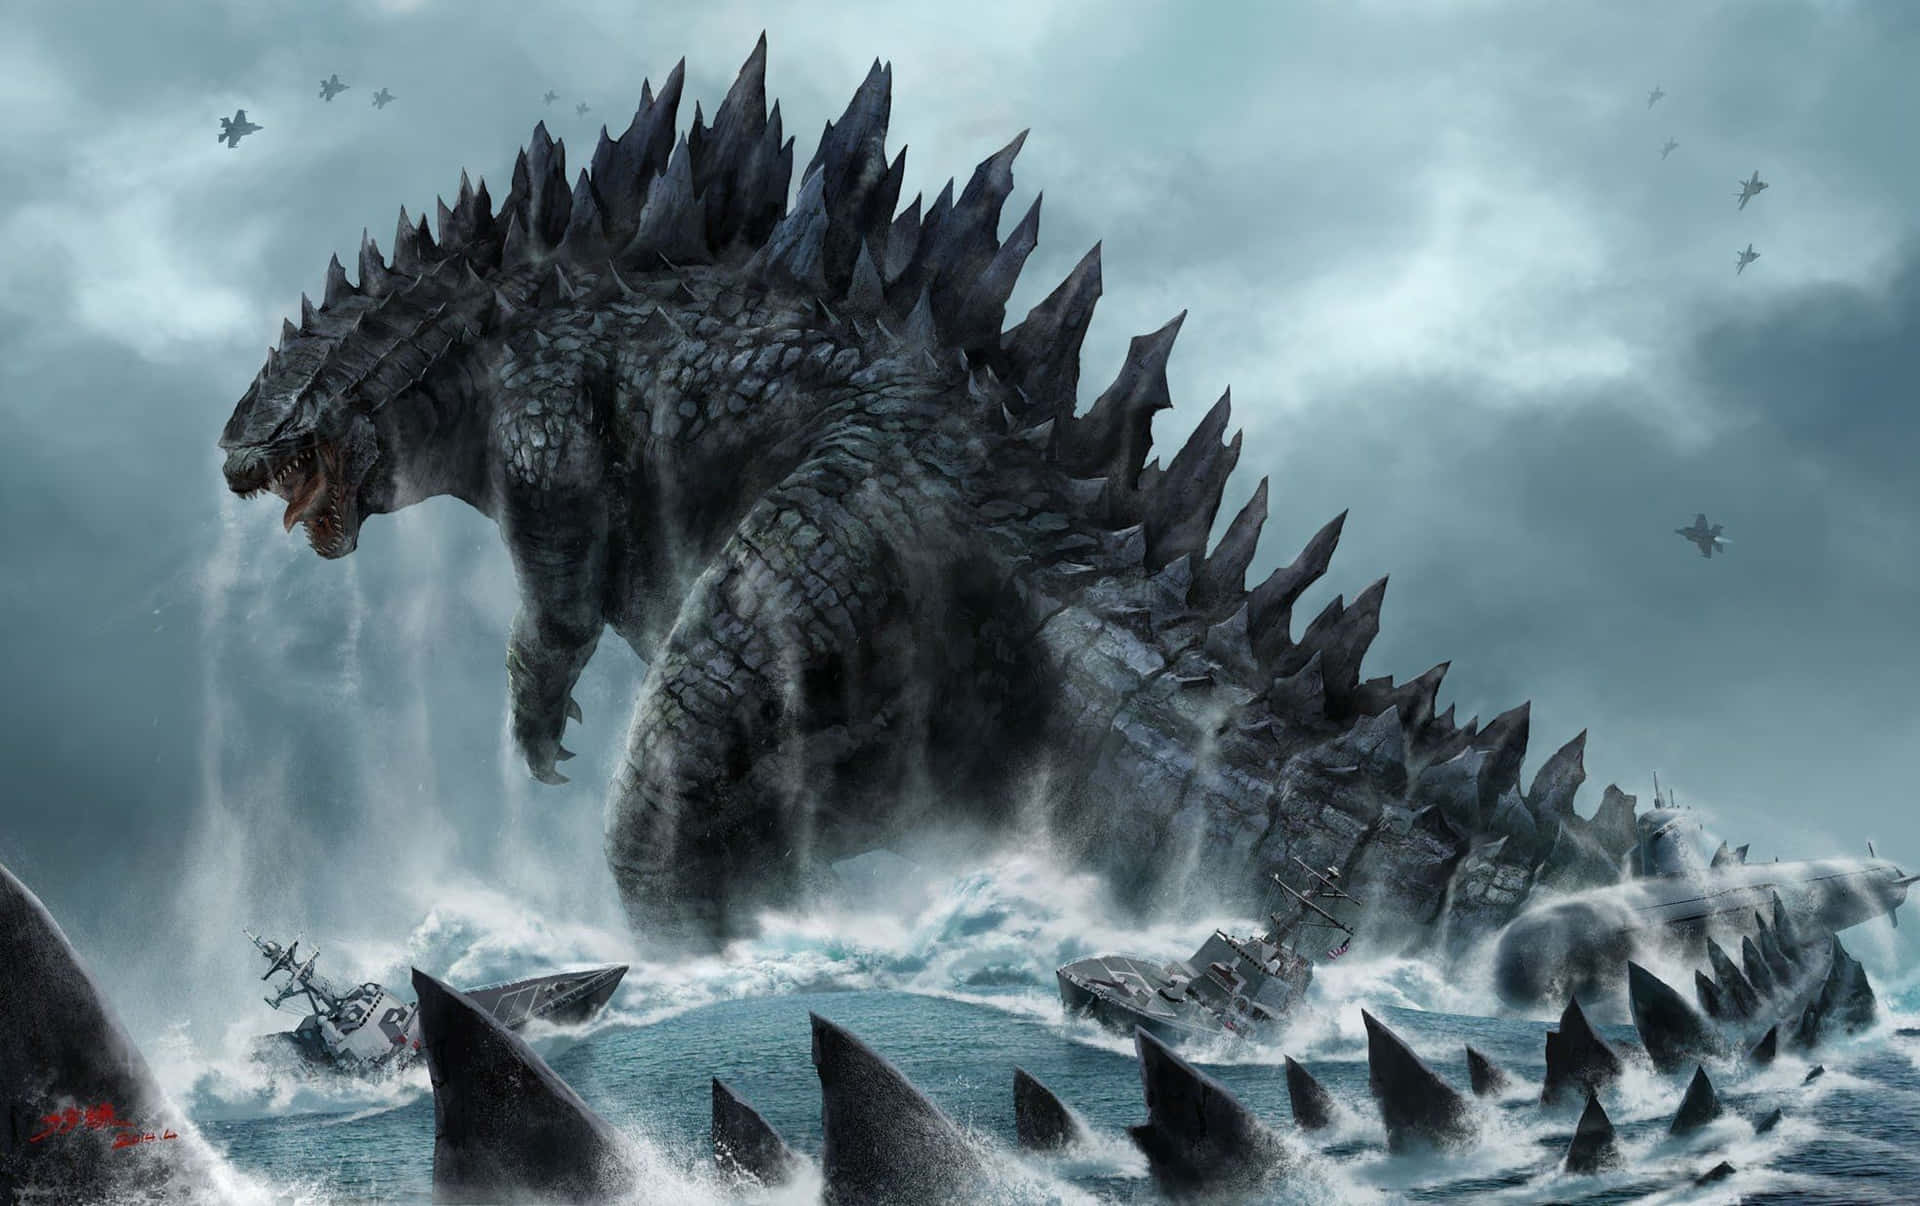 Impresionanteataque De Godzilla En El Océano Fondo de pantalla